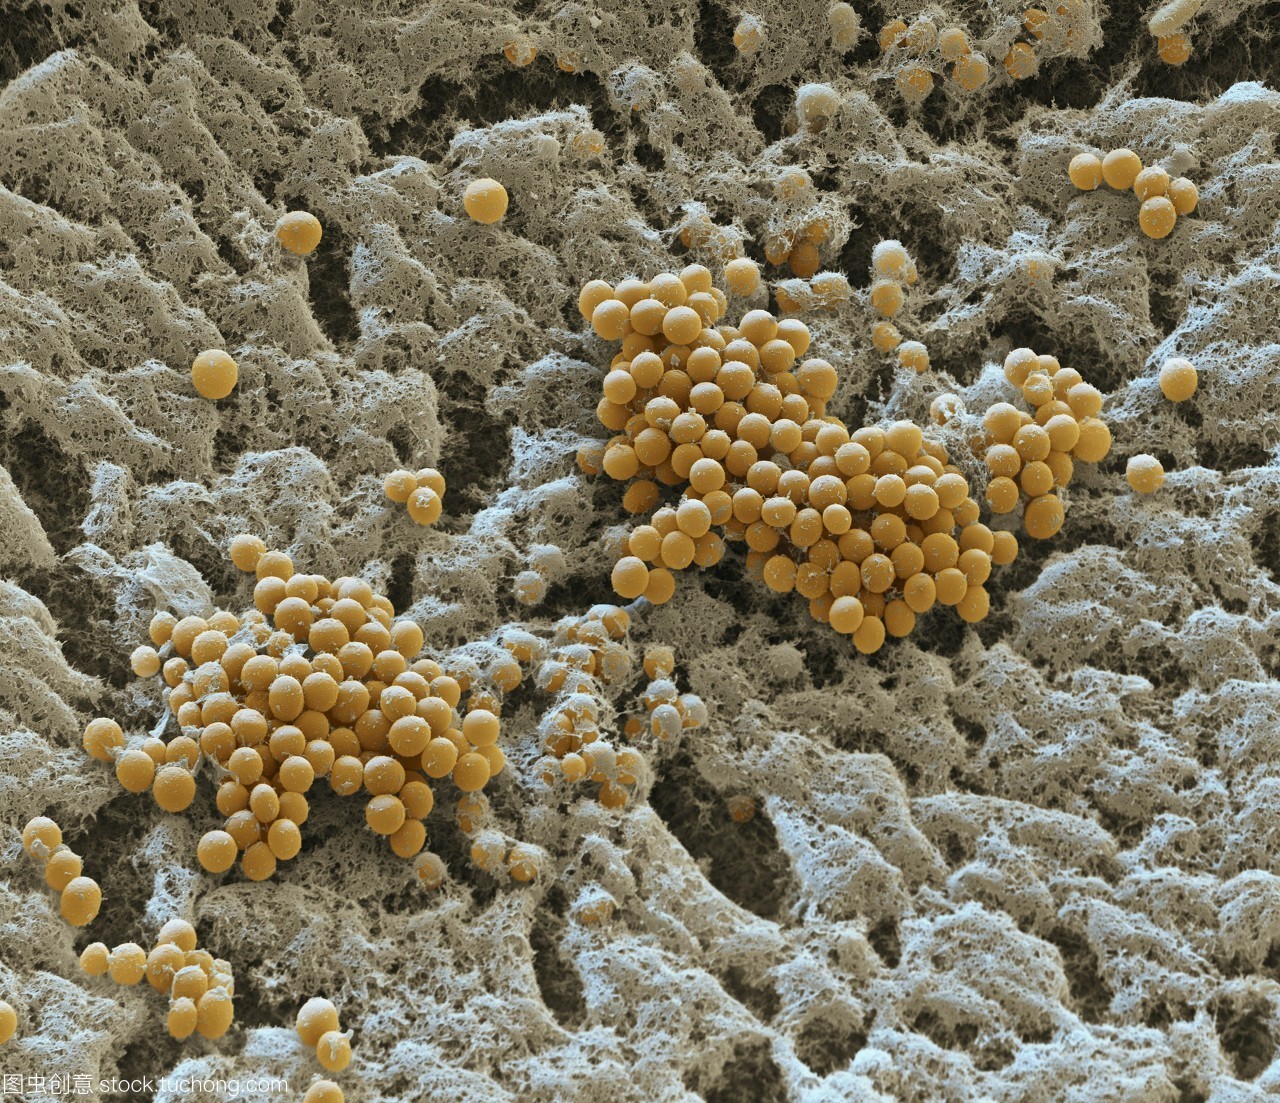 图6 孢子形态特征-大型真菌-图片